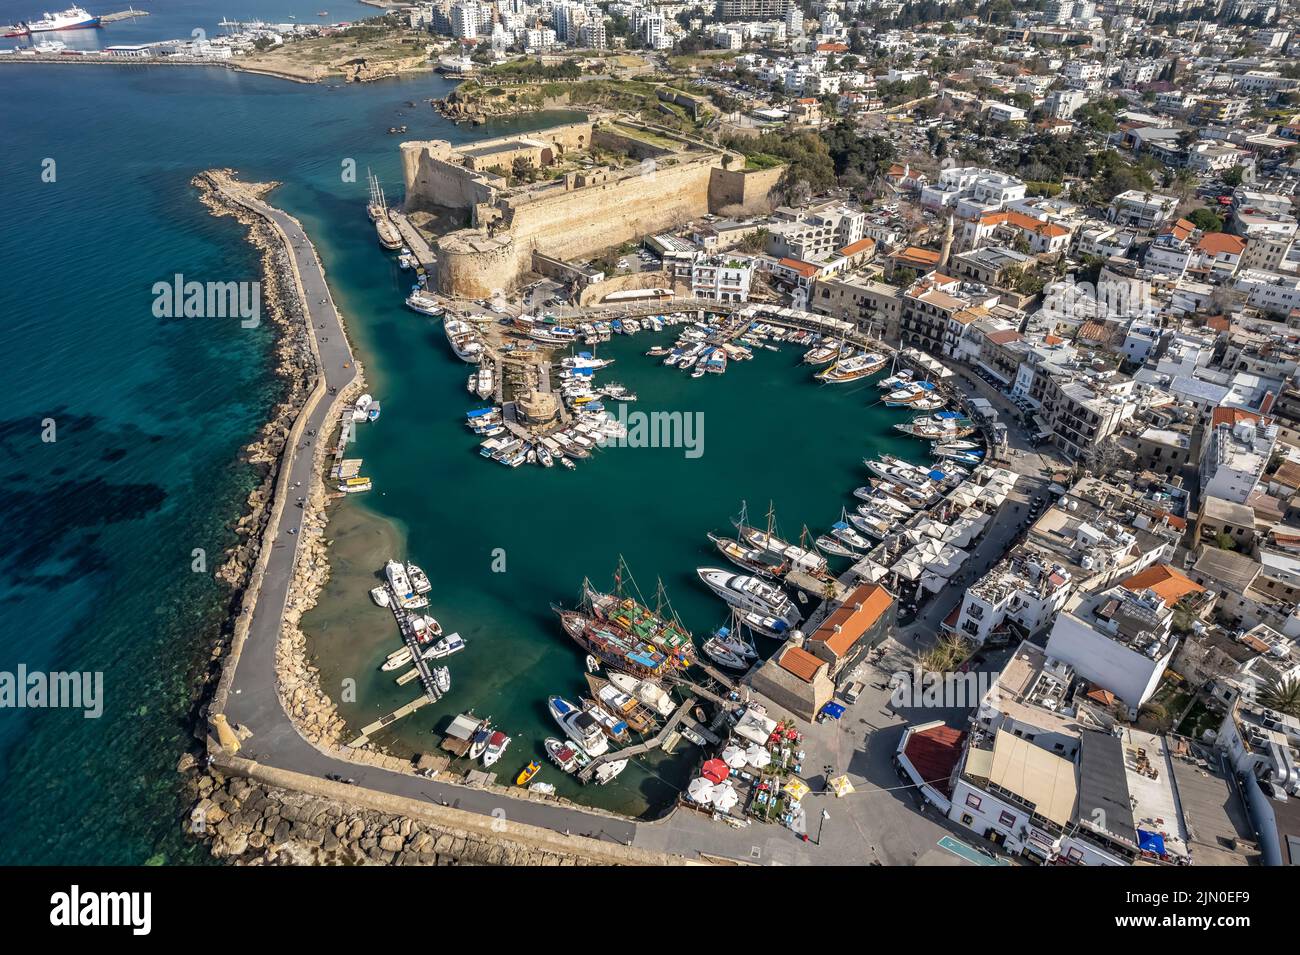 Festung und Hafen von Kyrenia oder Girne aus der Luft, Türkische Republik Nordzypern, Europa  |   Kyrenia Castle and harbour aerial view, Kyrenia or Stock Photo